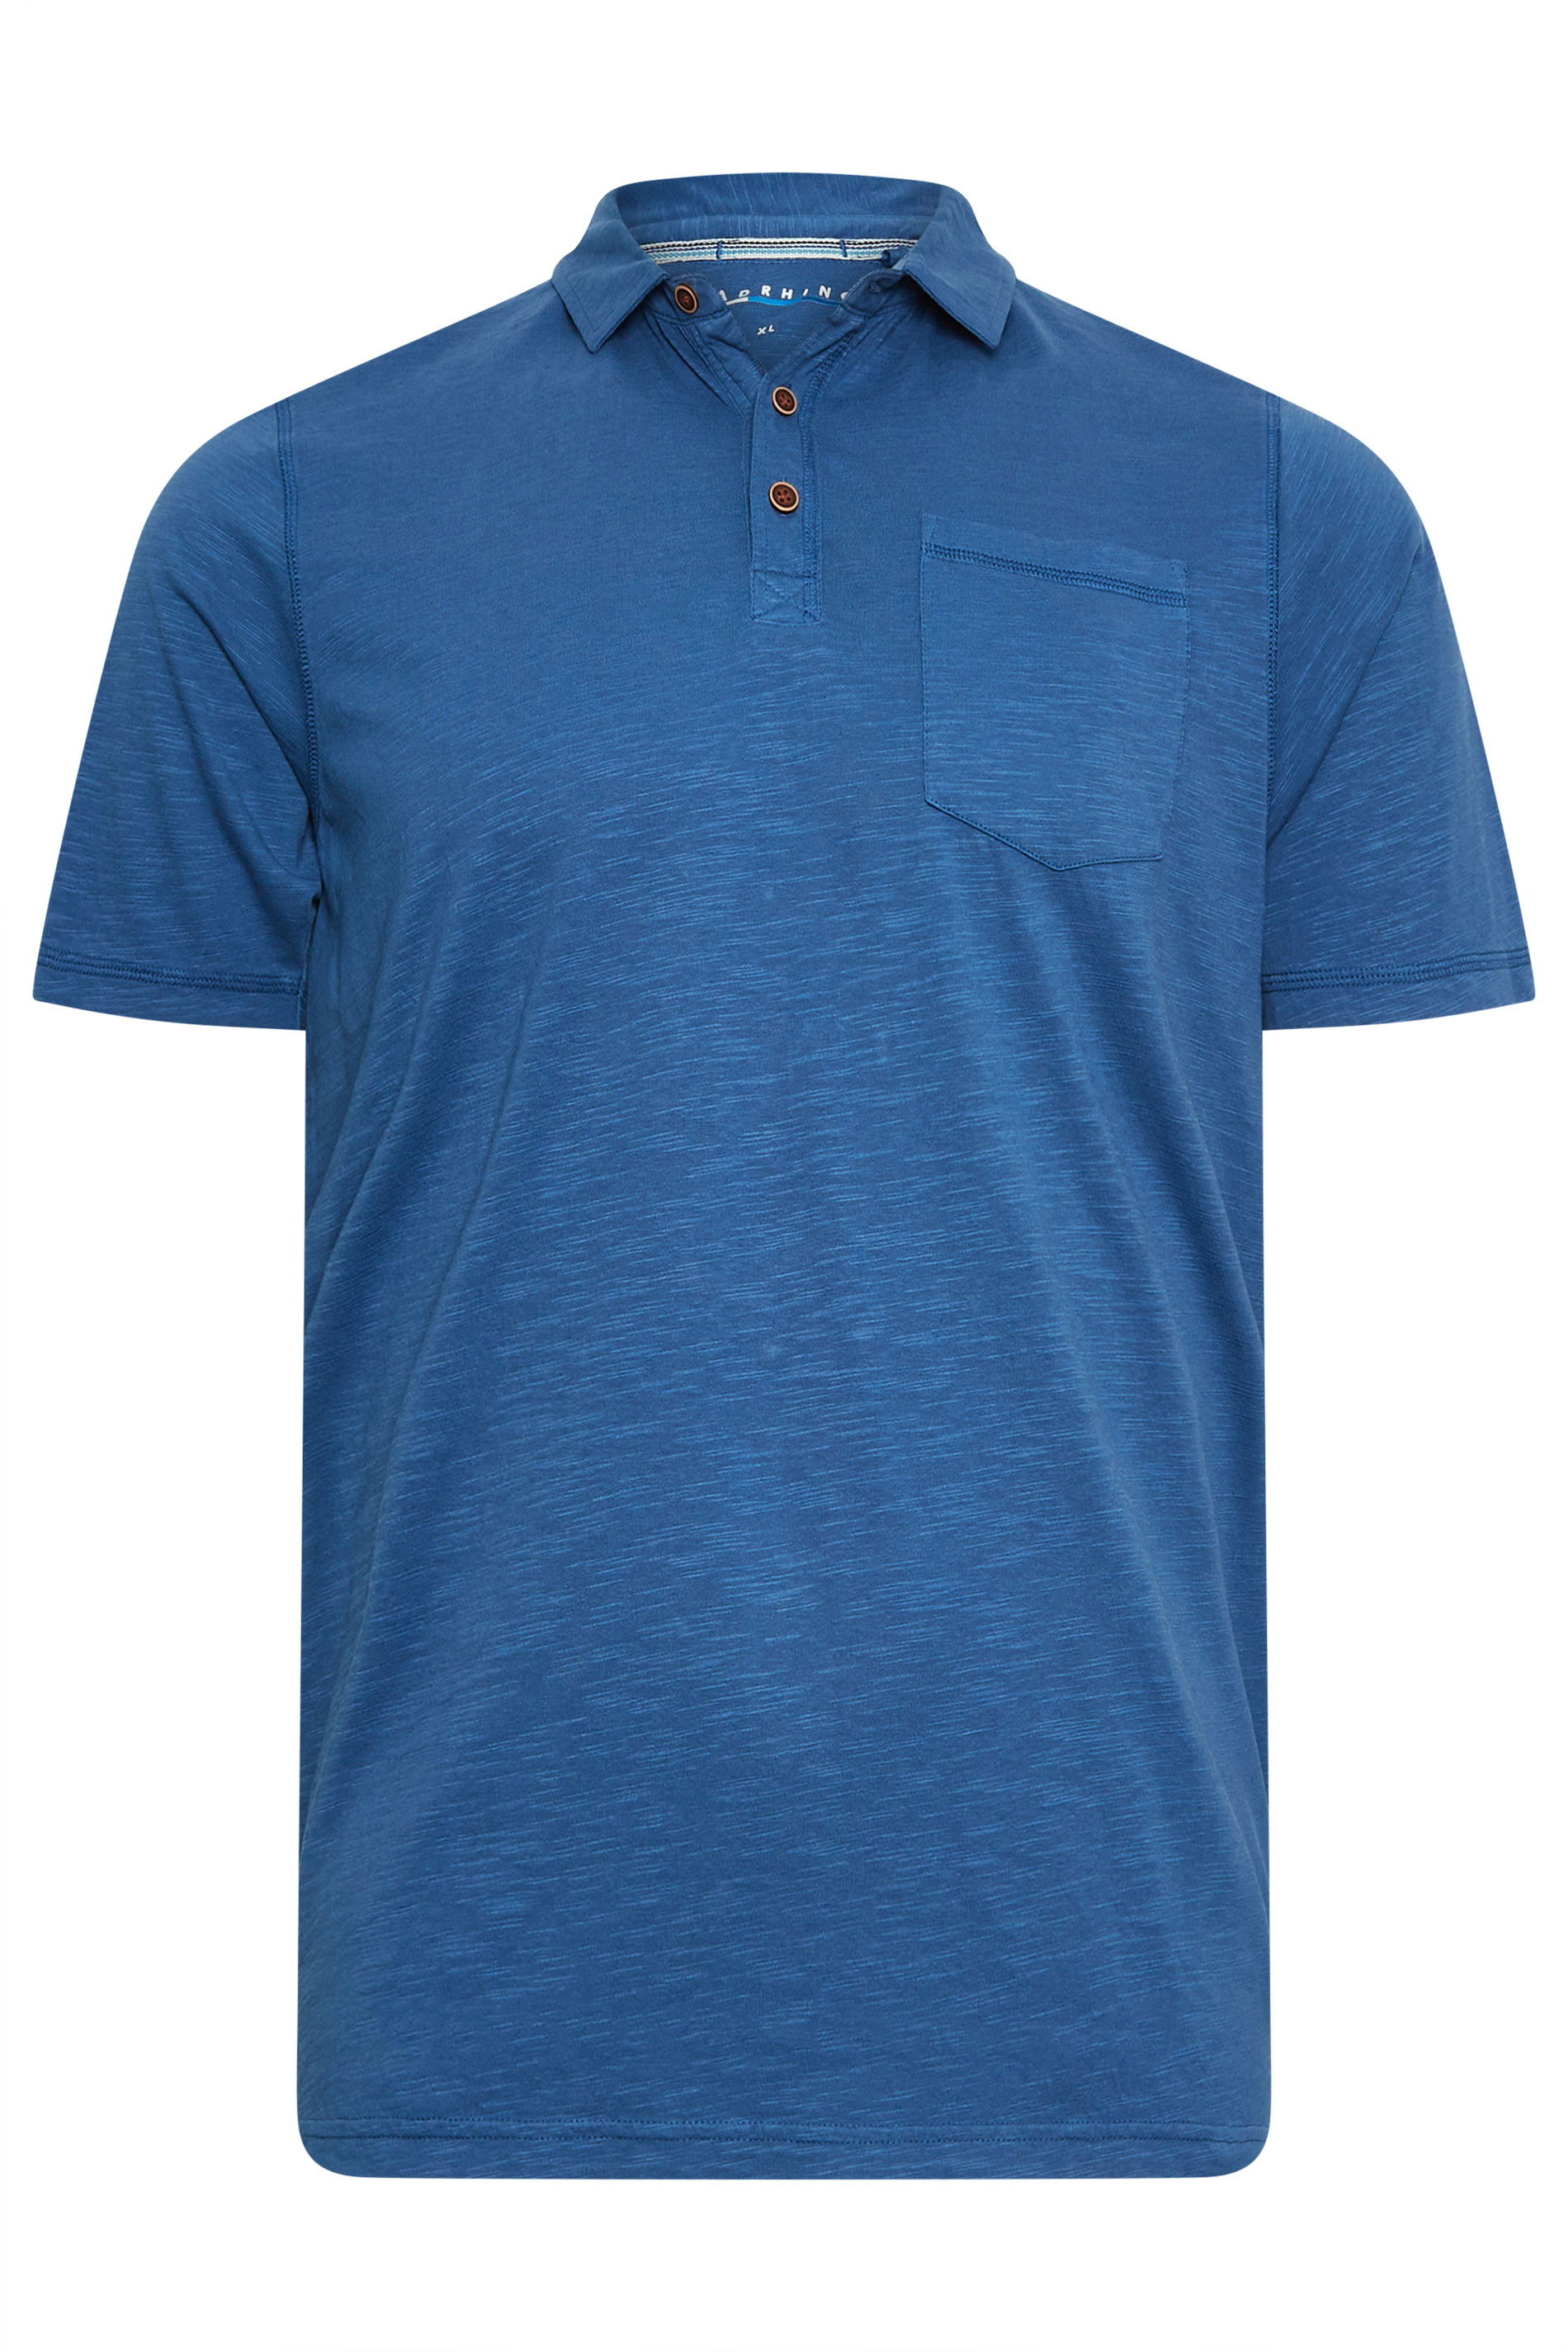 BadRhino Big & Tall Denim Blue Slub Polo Shirt | BadRhino 2